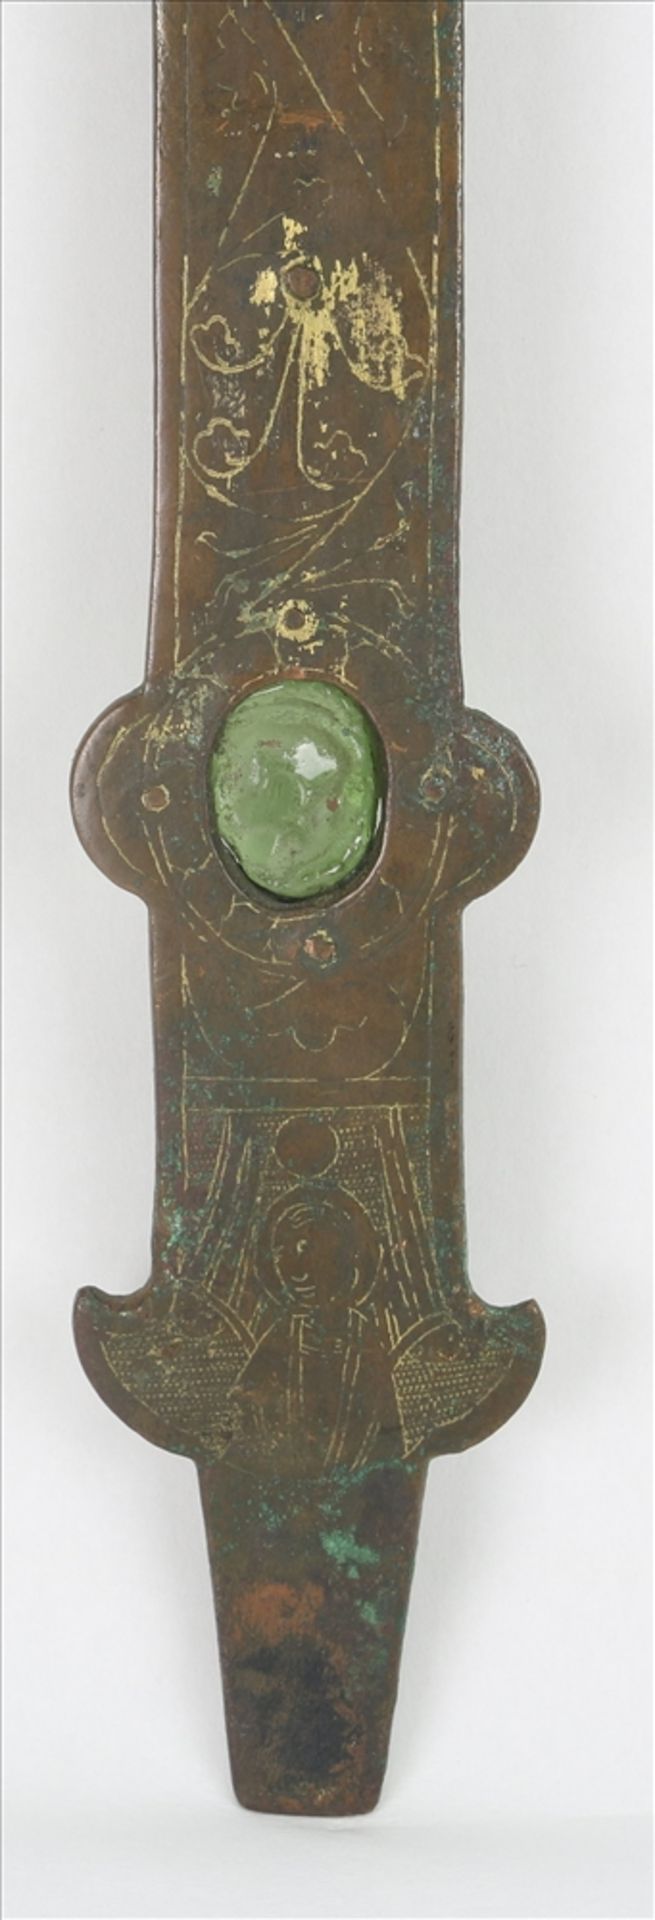 Museales Vortragekruzifix Spätromanik, Nordeuropa. Bronzekorpus bereits im Dreinageltypus, wohl um - Bild 8 aus 11